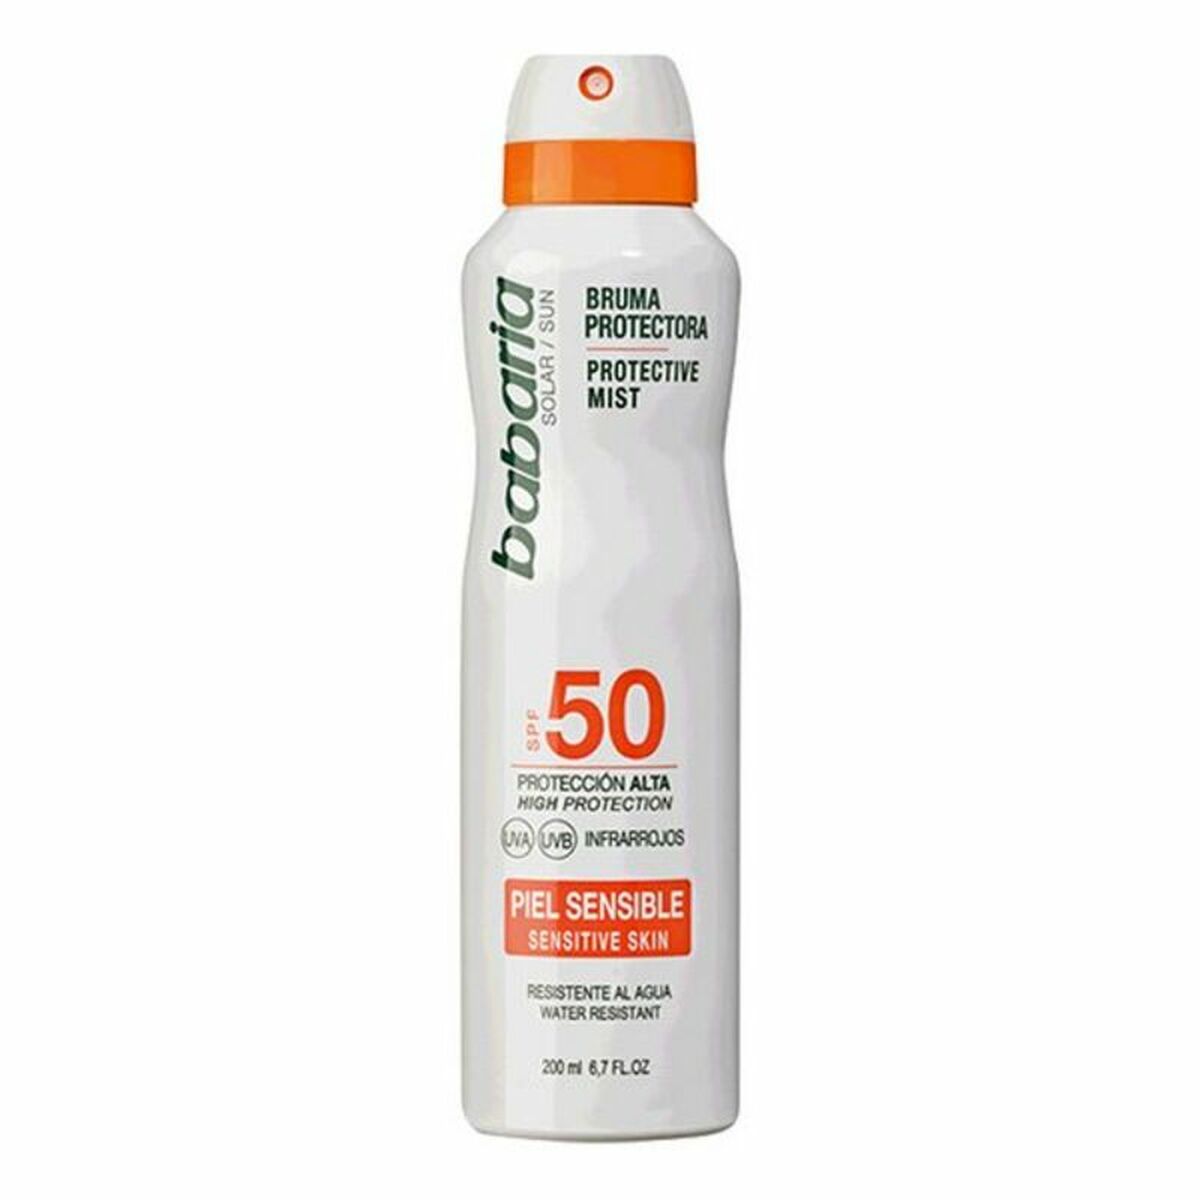 Sun Screen Spray Babaria Spf 50 (200 ml) Sensitive skin 50 (200 ml)